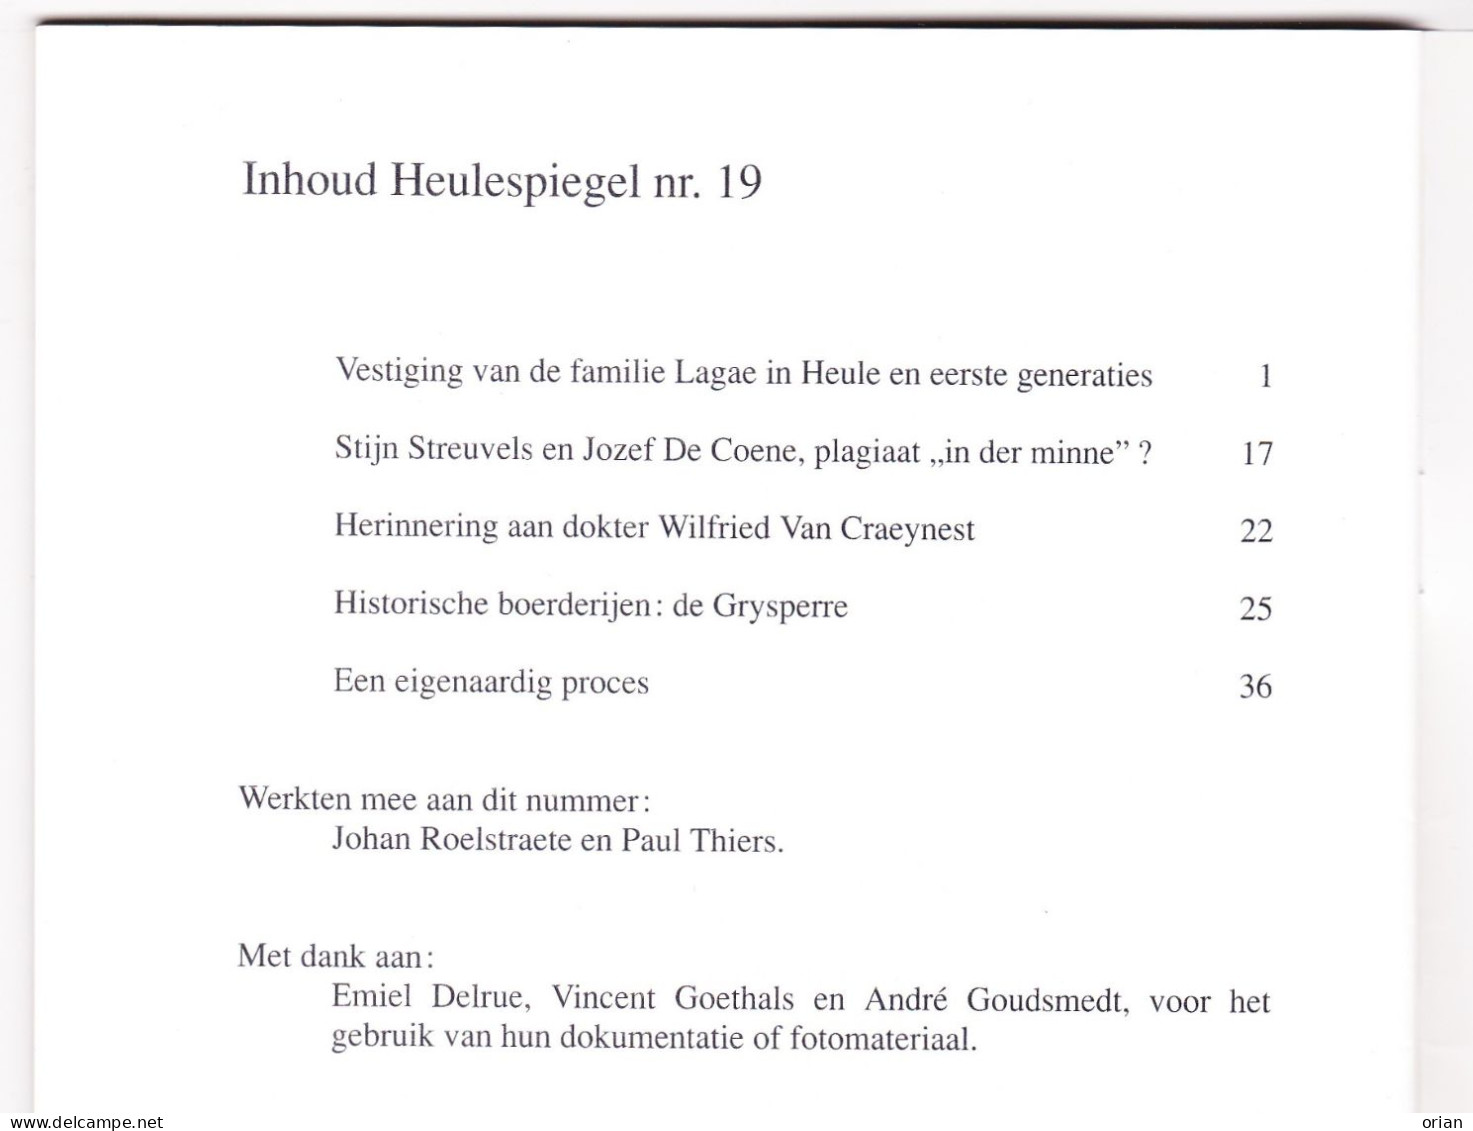 2 X Heulespiegel - Heemk. Bijdrage - Tijdschriftjes Nrs 19 & 20 Uit 1994 - Fam. Lagae / Streuvels / Preetjes Molen Heule - Histoire